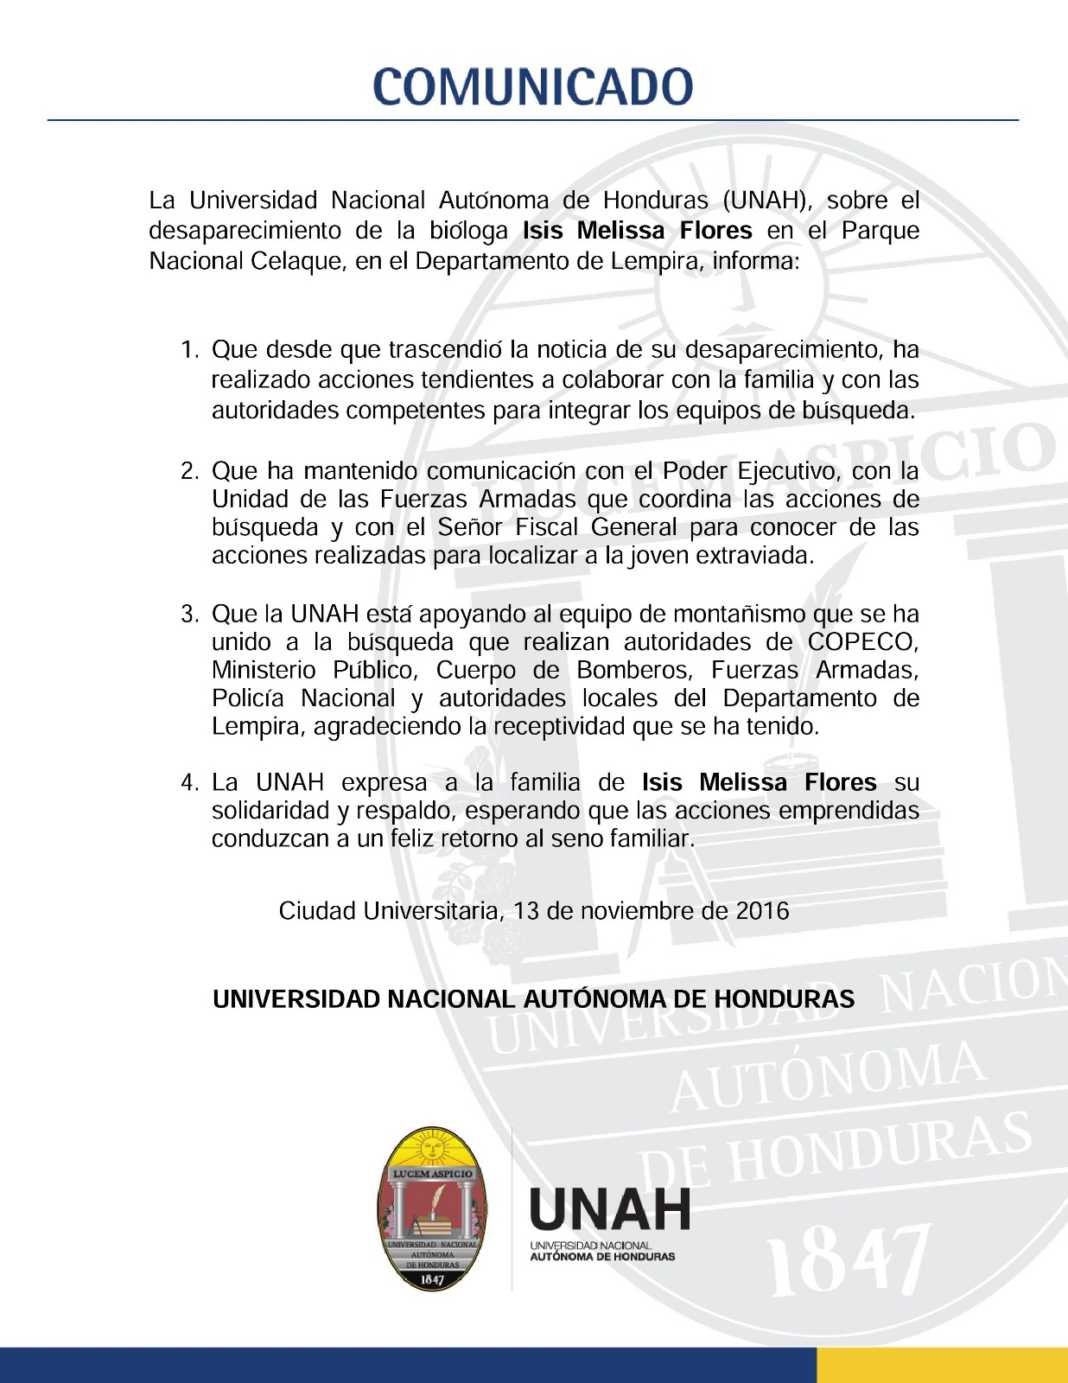 UNAH emite comunicado por desaparecimiento de Bióloga hondureña